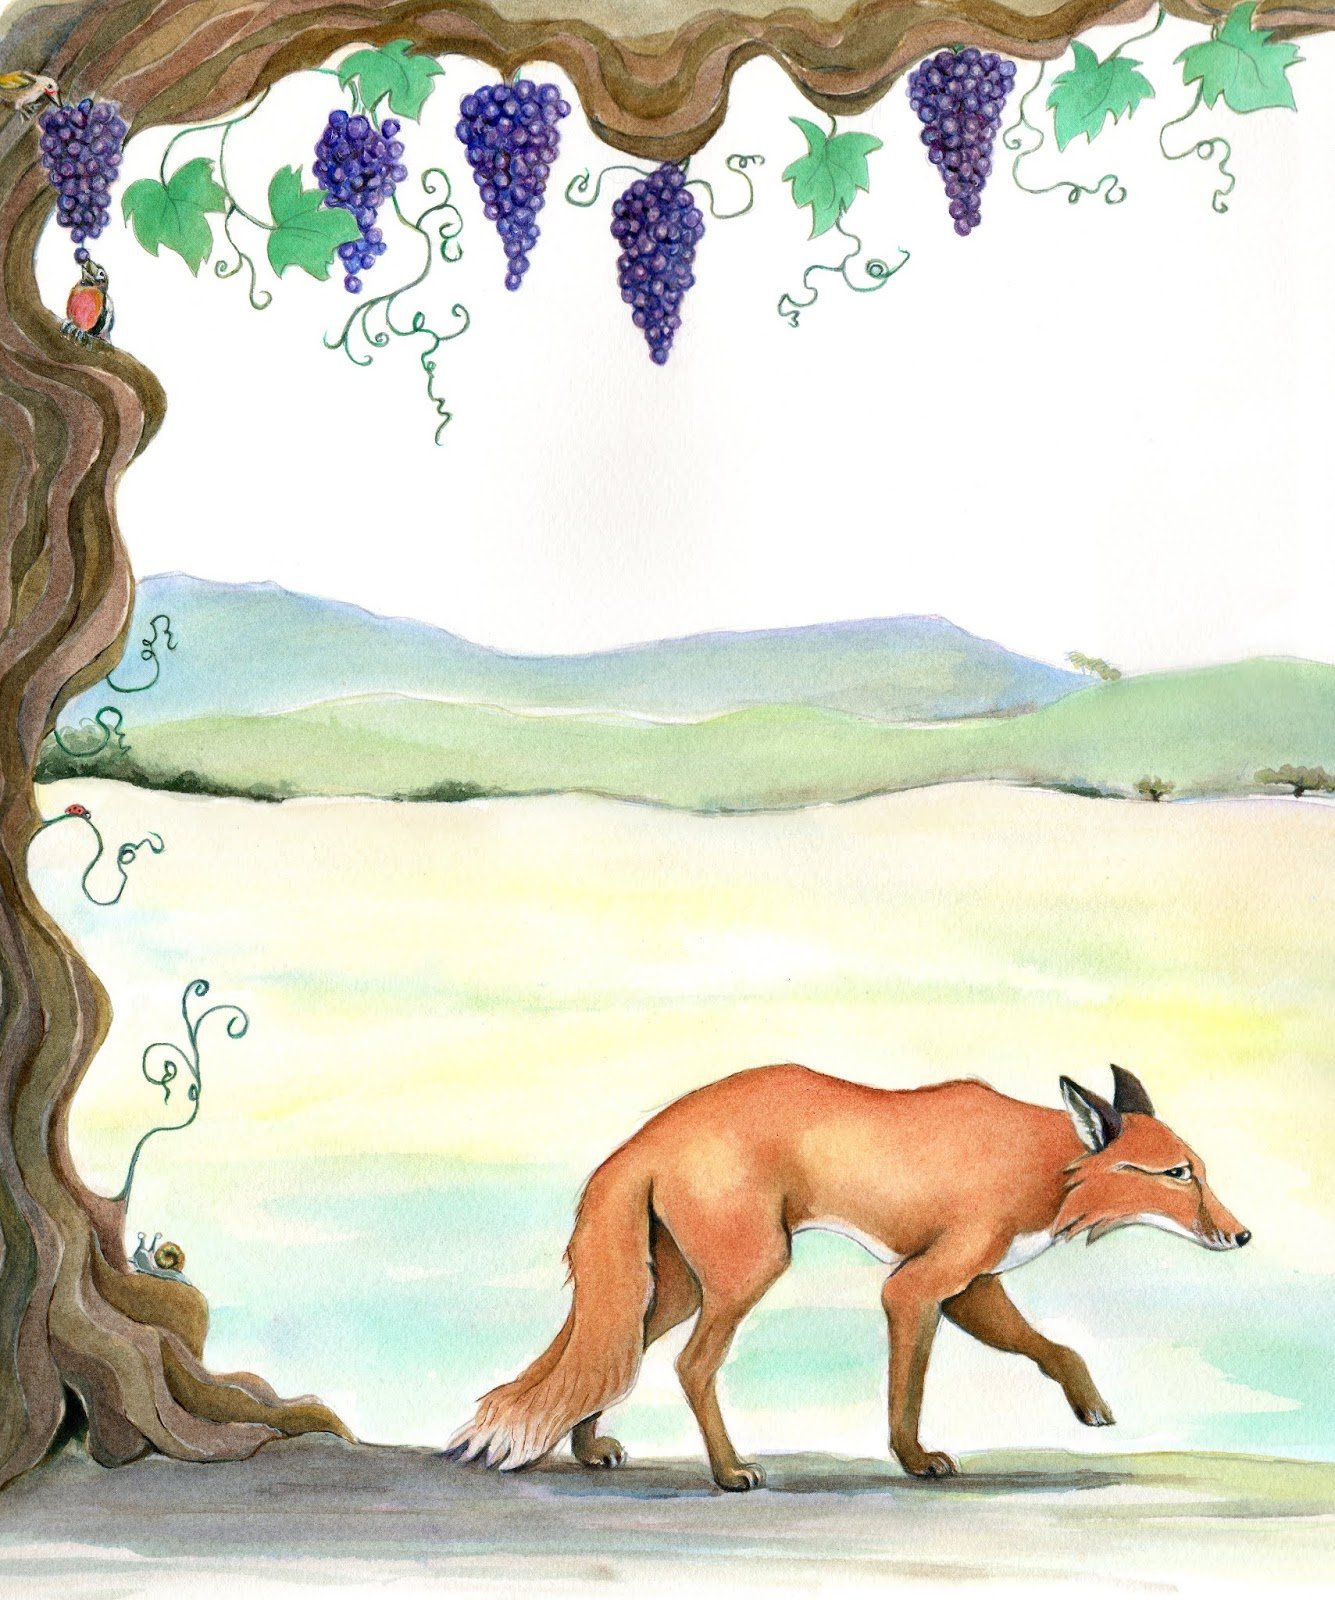 Рисунок к басне Крылова лисица и виноград